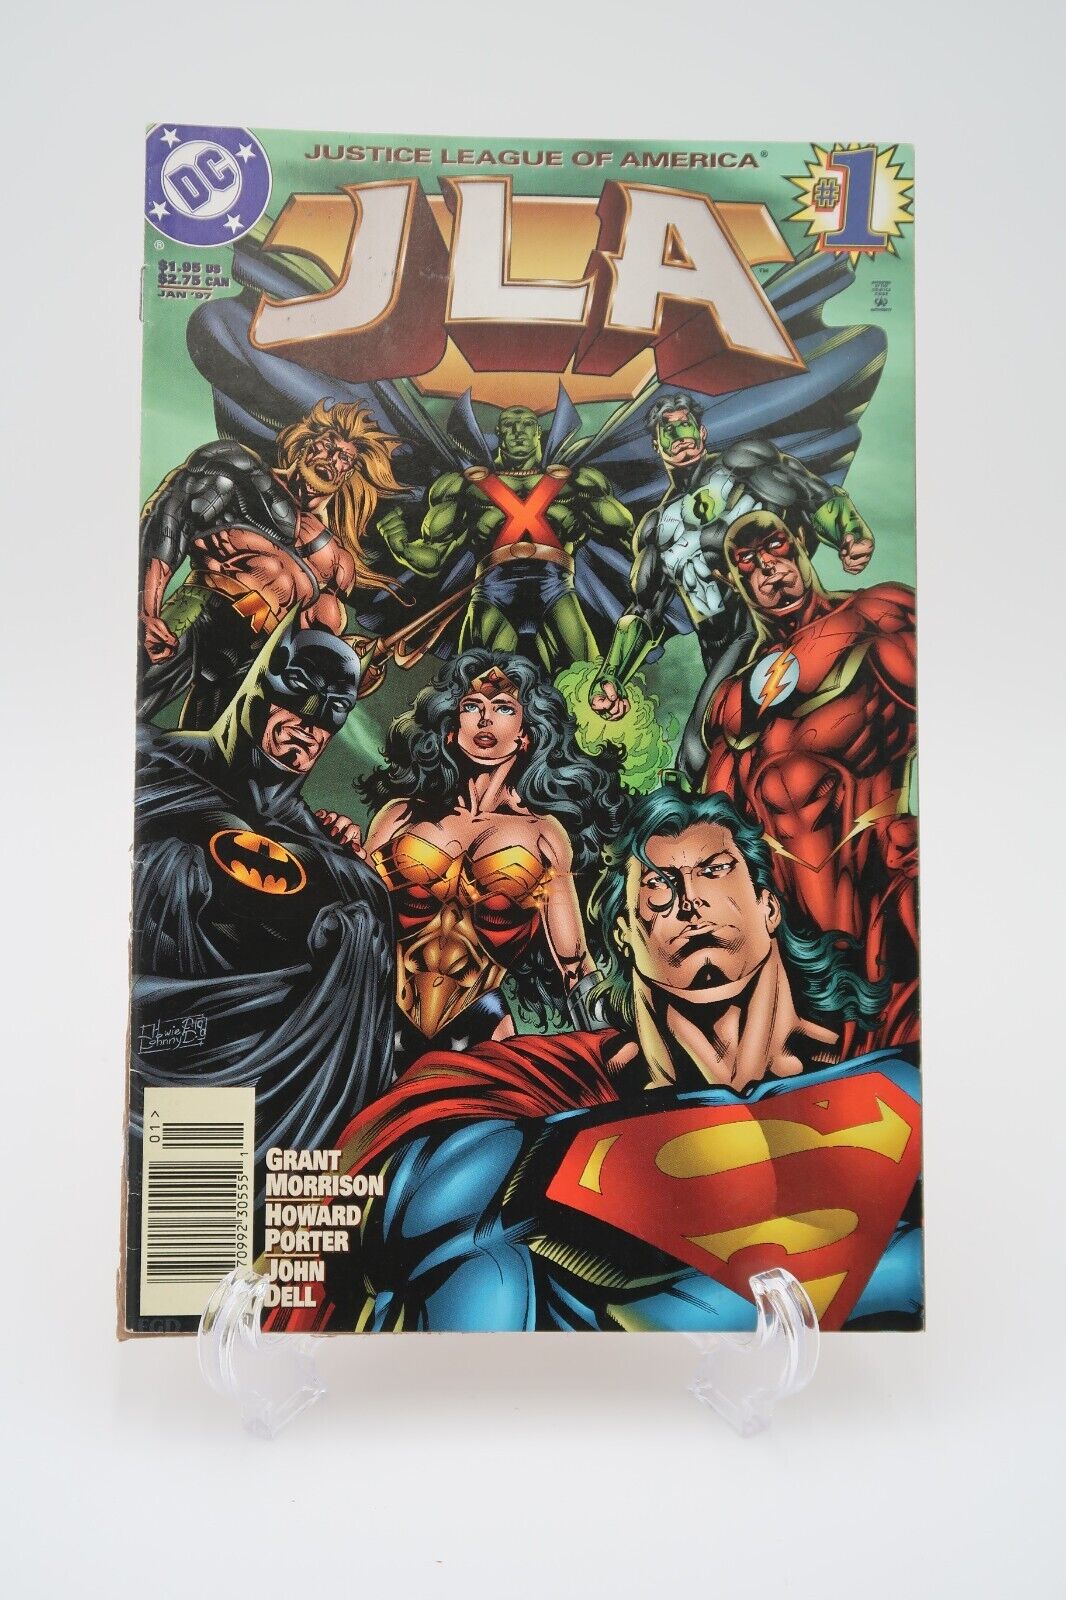 JLA #1 - Justice League of America DC Comics January 1997 